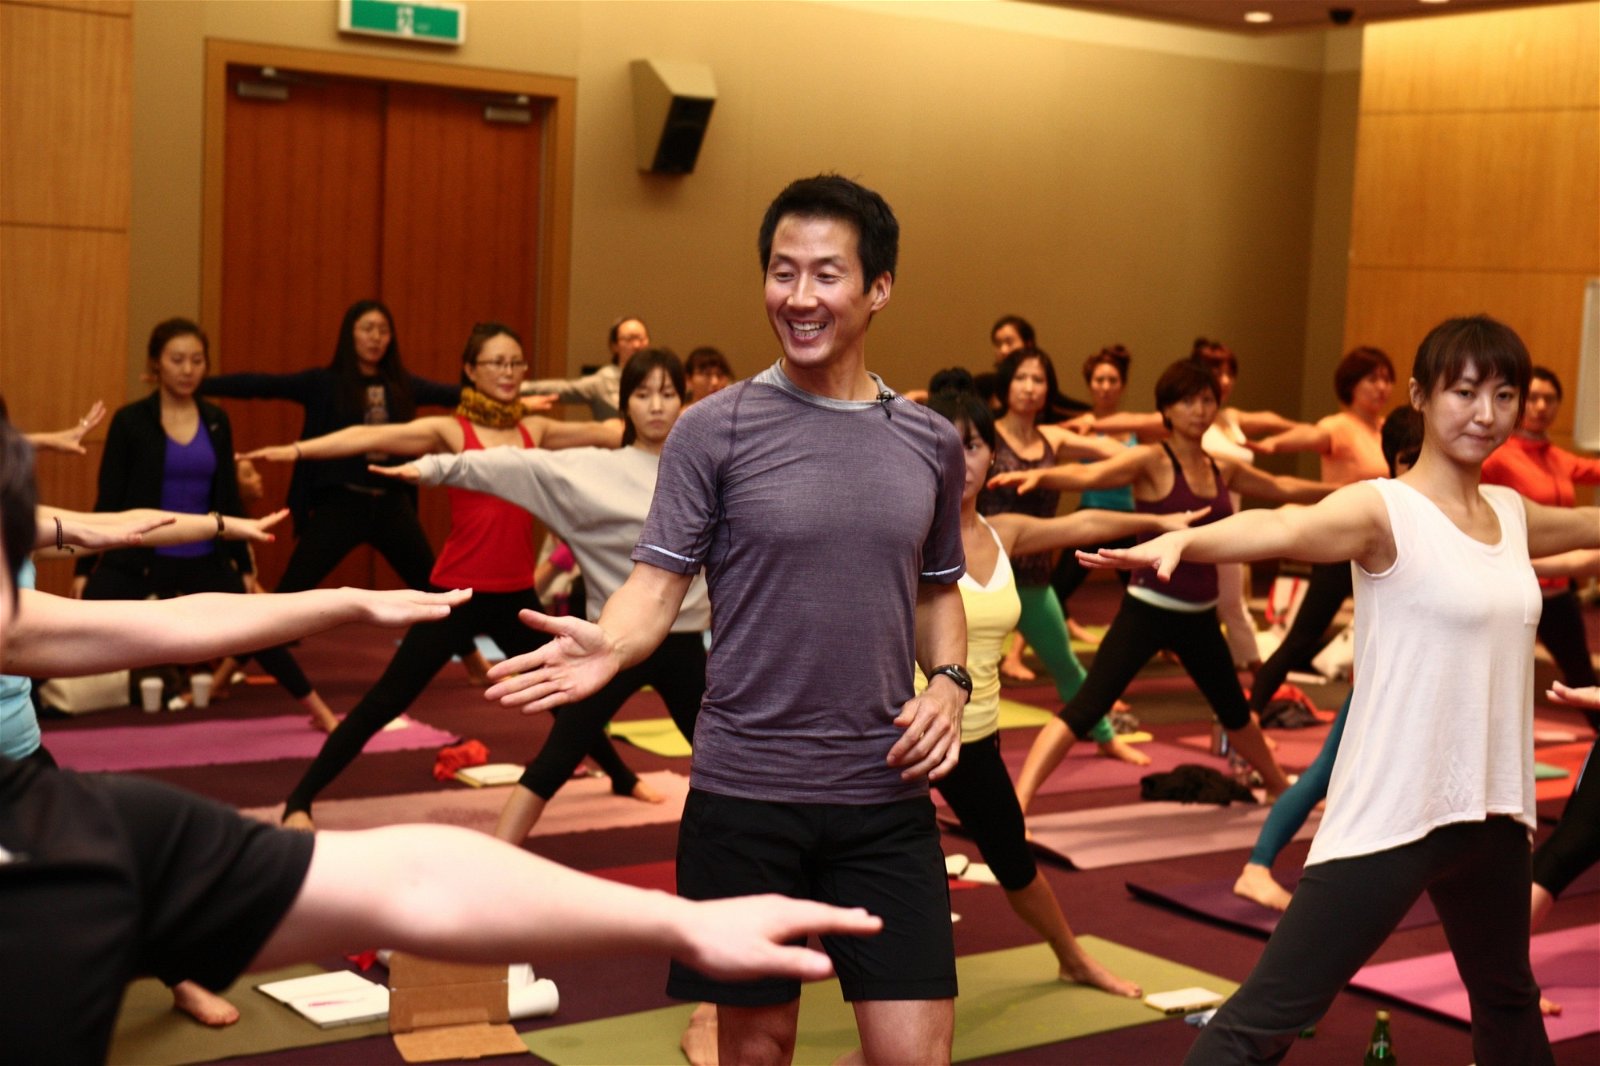 成为全职瑜伽导师及导师培训员后，David Kim到日本、韩国、瑞典、澳洲、希腊等多国授课，学生遍布各地。英国导演迈克艾普特（Michael Apted）和福斯动画（Fox Animation）总裁凡内莎莫里森（Vanessa Morrison）也是他的学生。